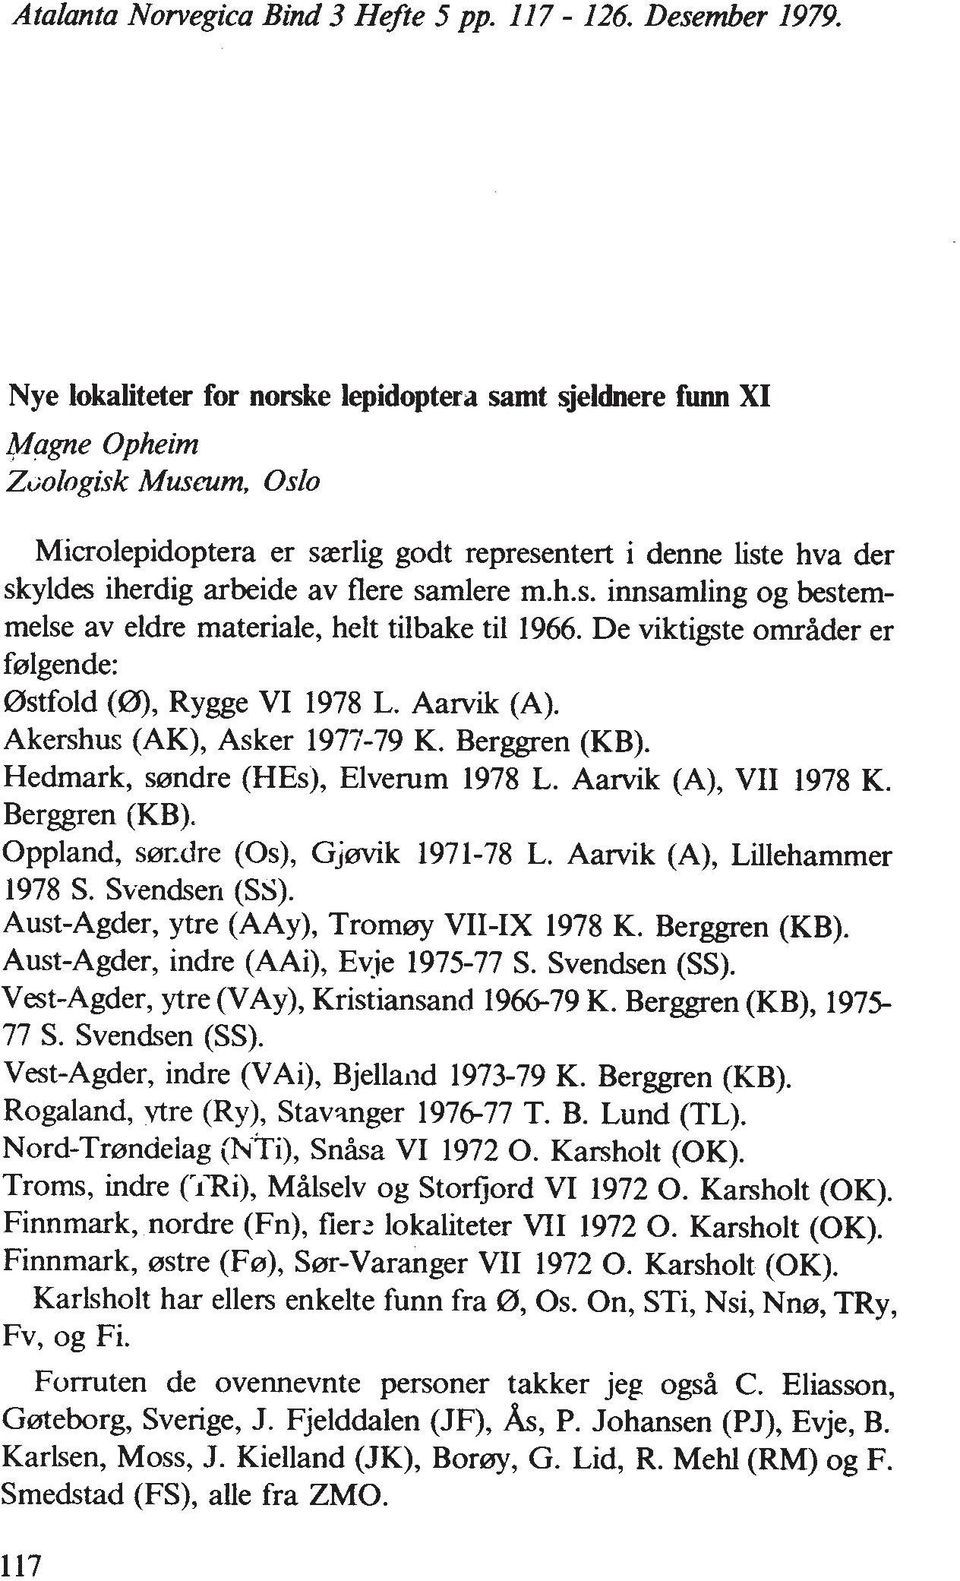 samlere m.h.s. innsamling og bestemmelse av eldre materiale, helt tilbake ti1 1966. De viktigste ornrader er ferlgende: 0stfold (0), Rygge VI 1978 L. Aarvik (A). Akershus (AK), Asker 1977-79 K.